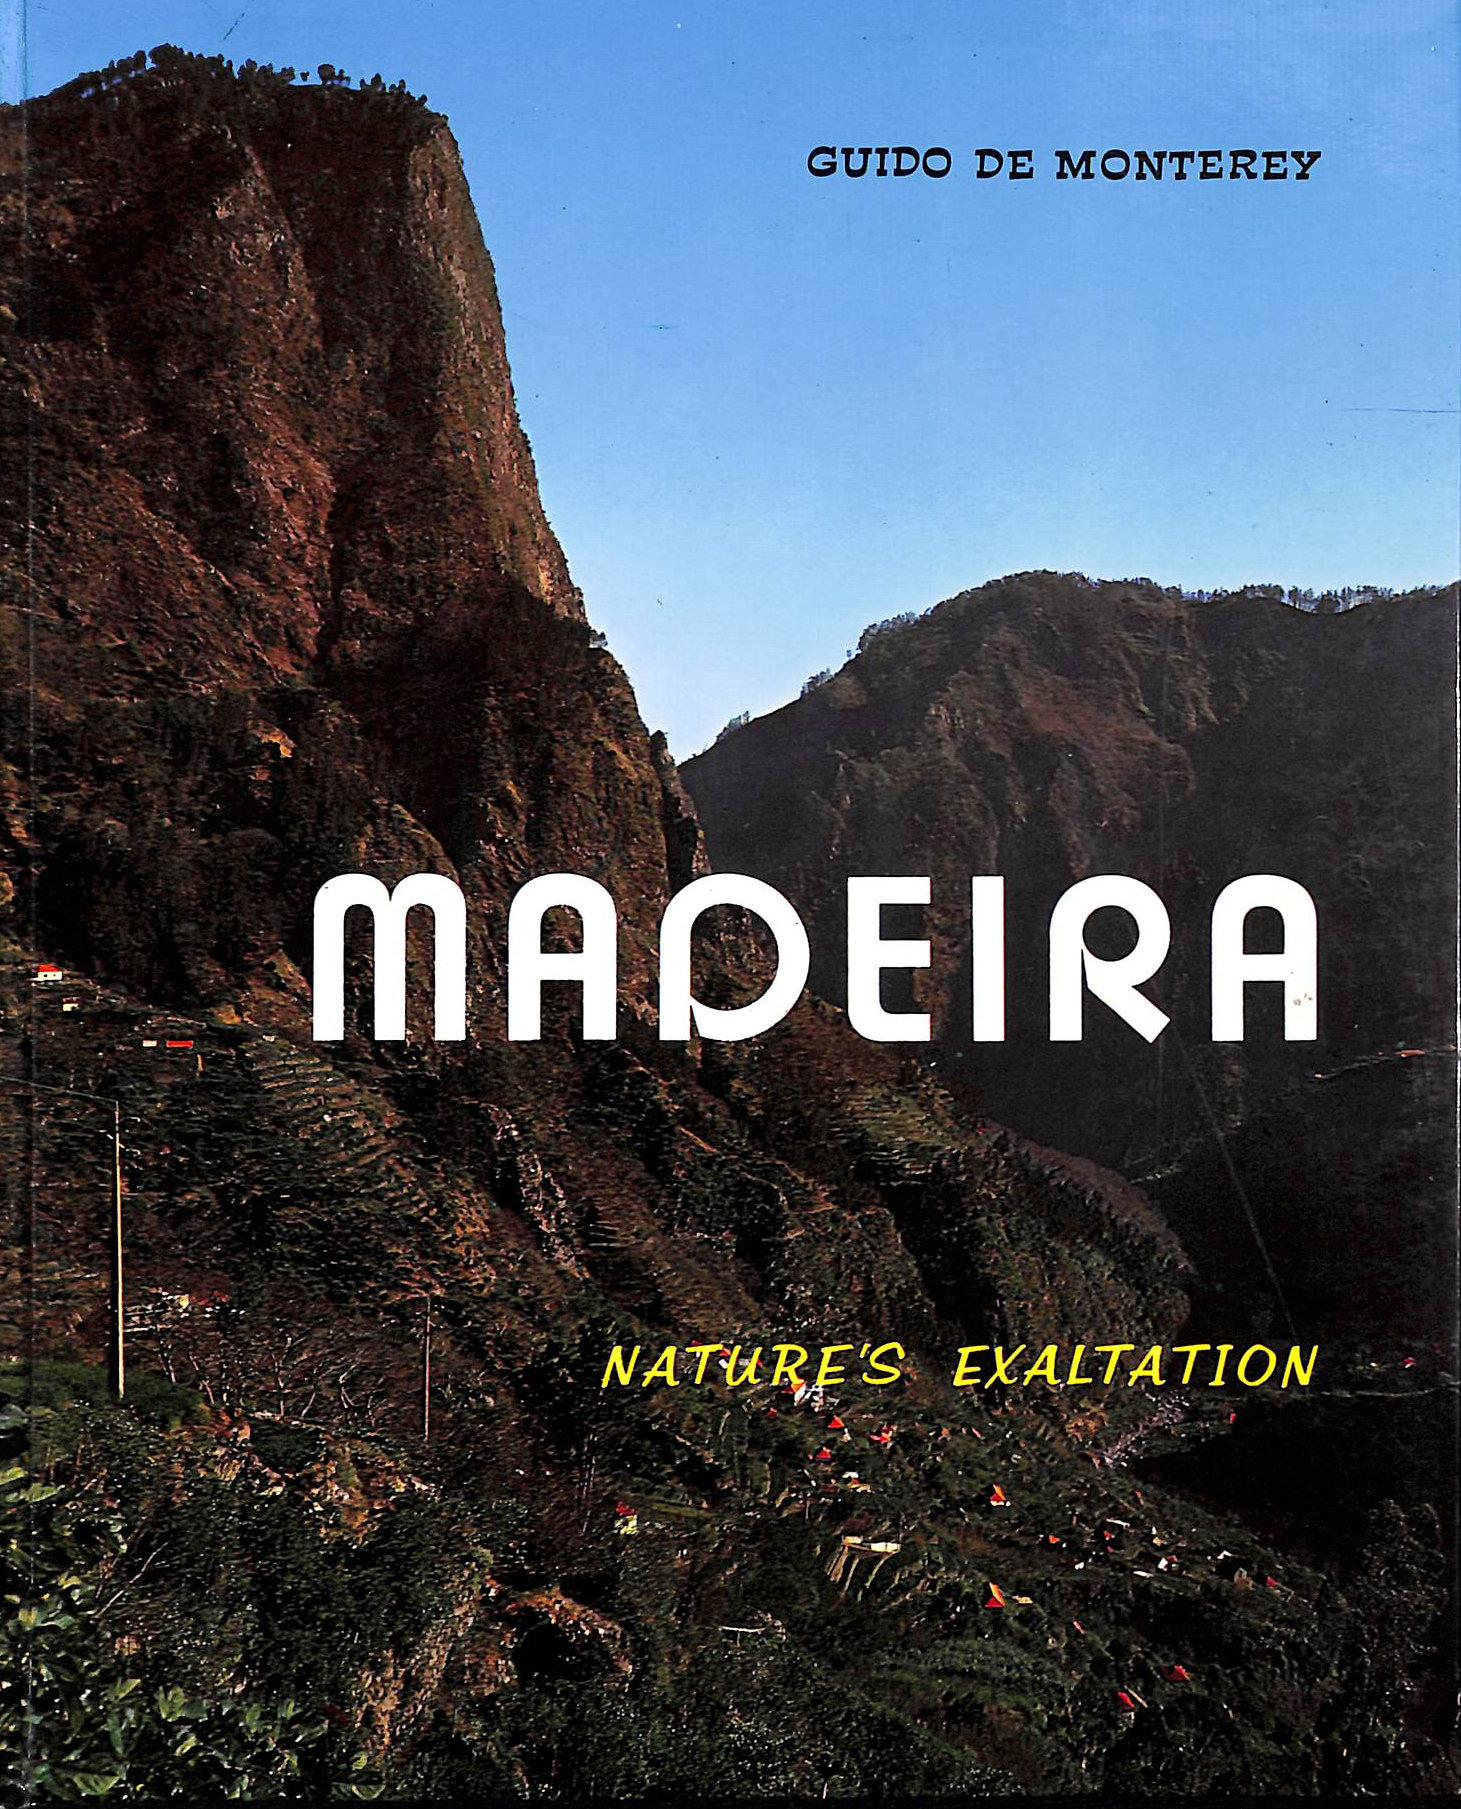 GUUIDO DE MONTEREY - Madeira, Nature's Exaltation